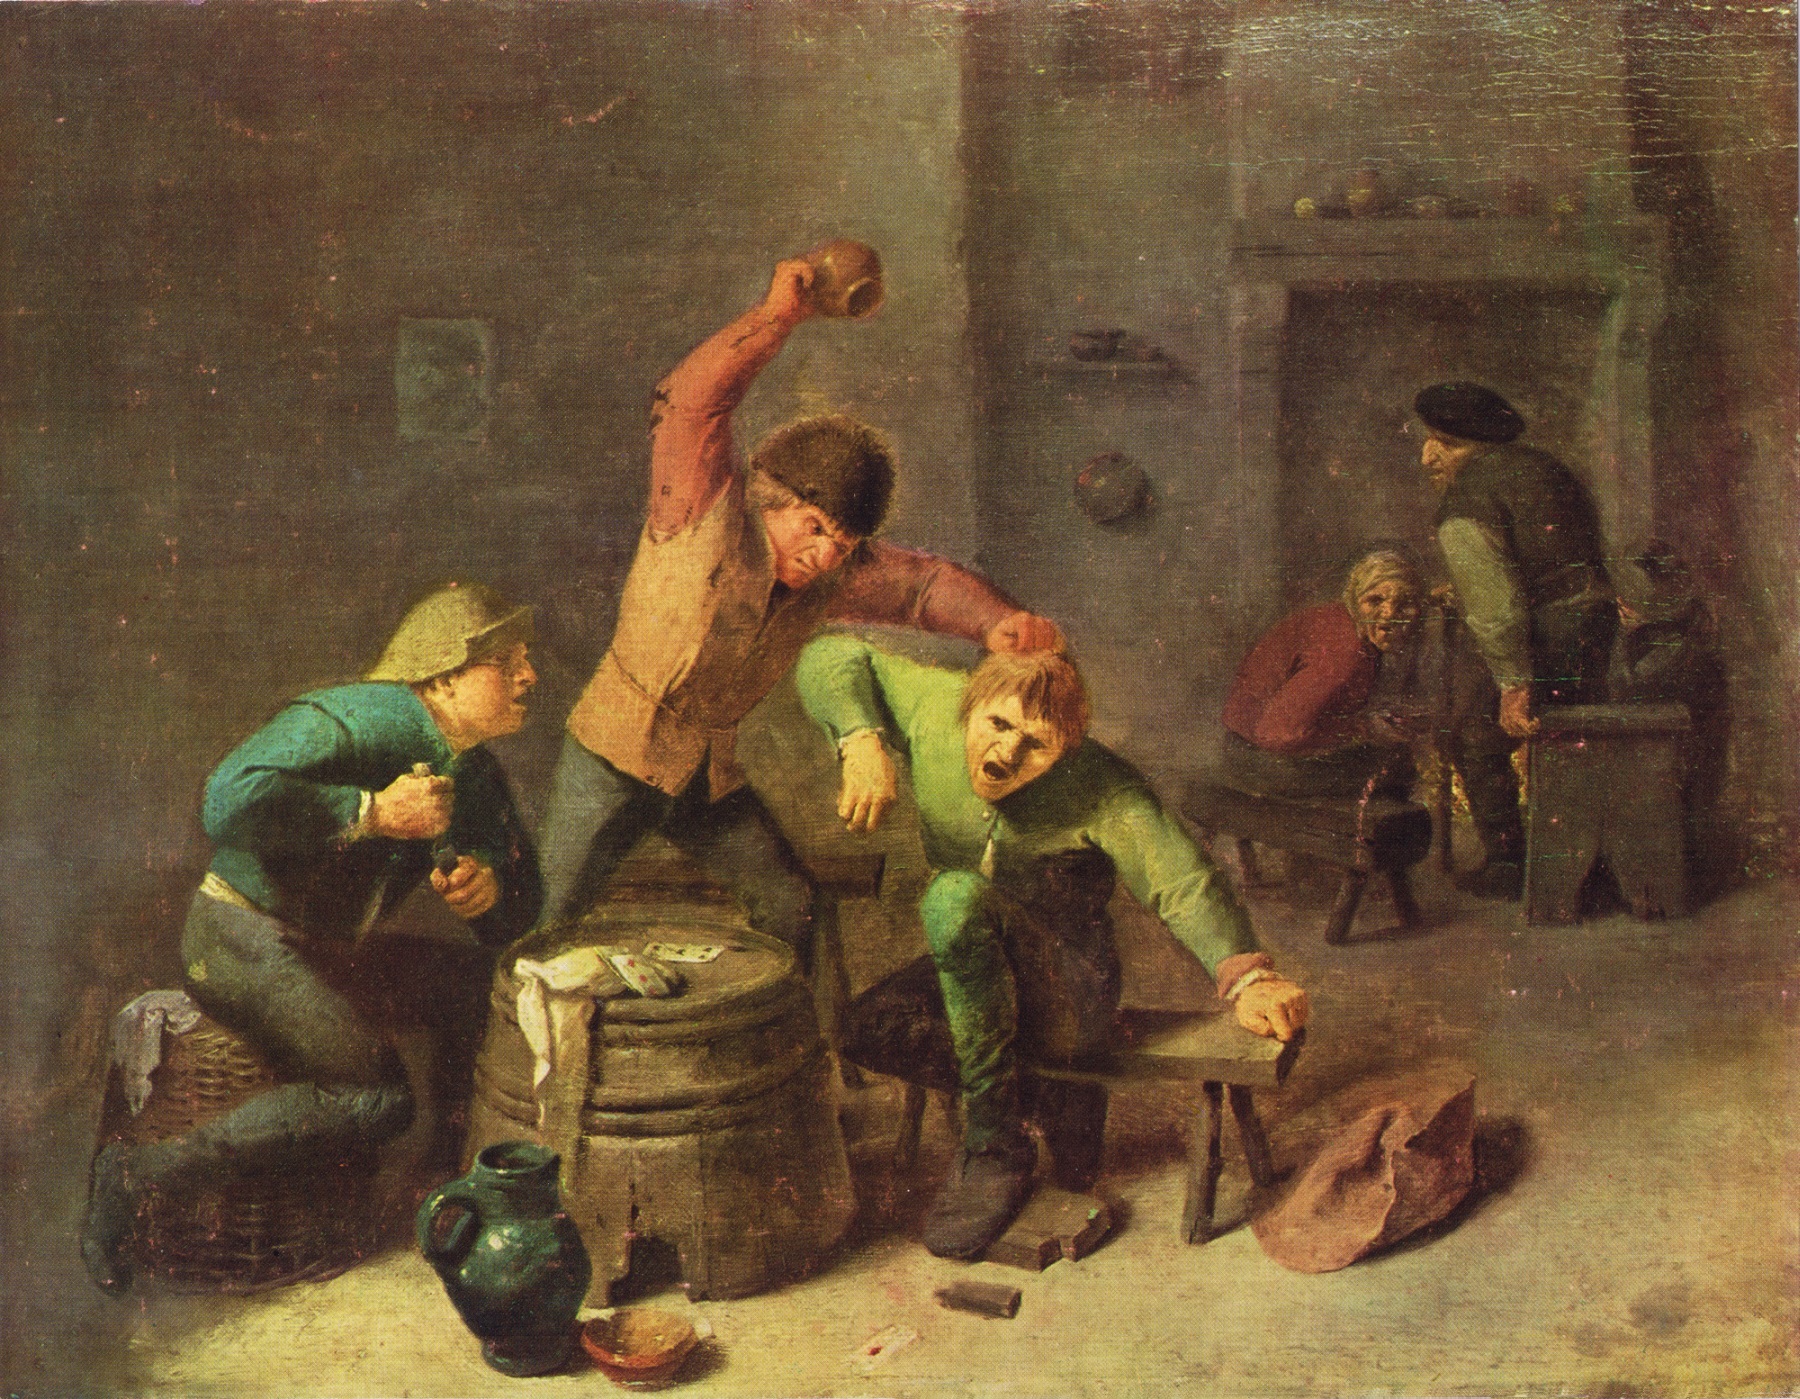 Autorem obrazu jest Adriaen Brouwer, przedstawia bójkę w gospodzie podczas gry w karty